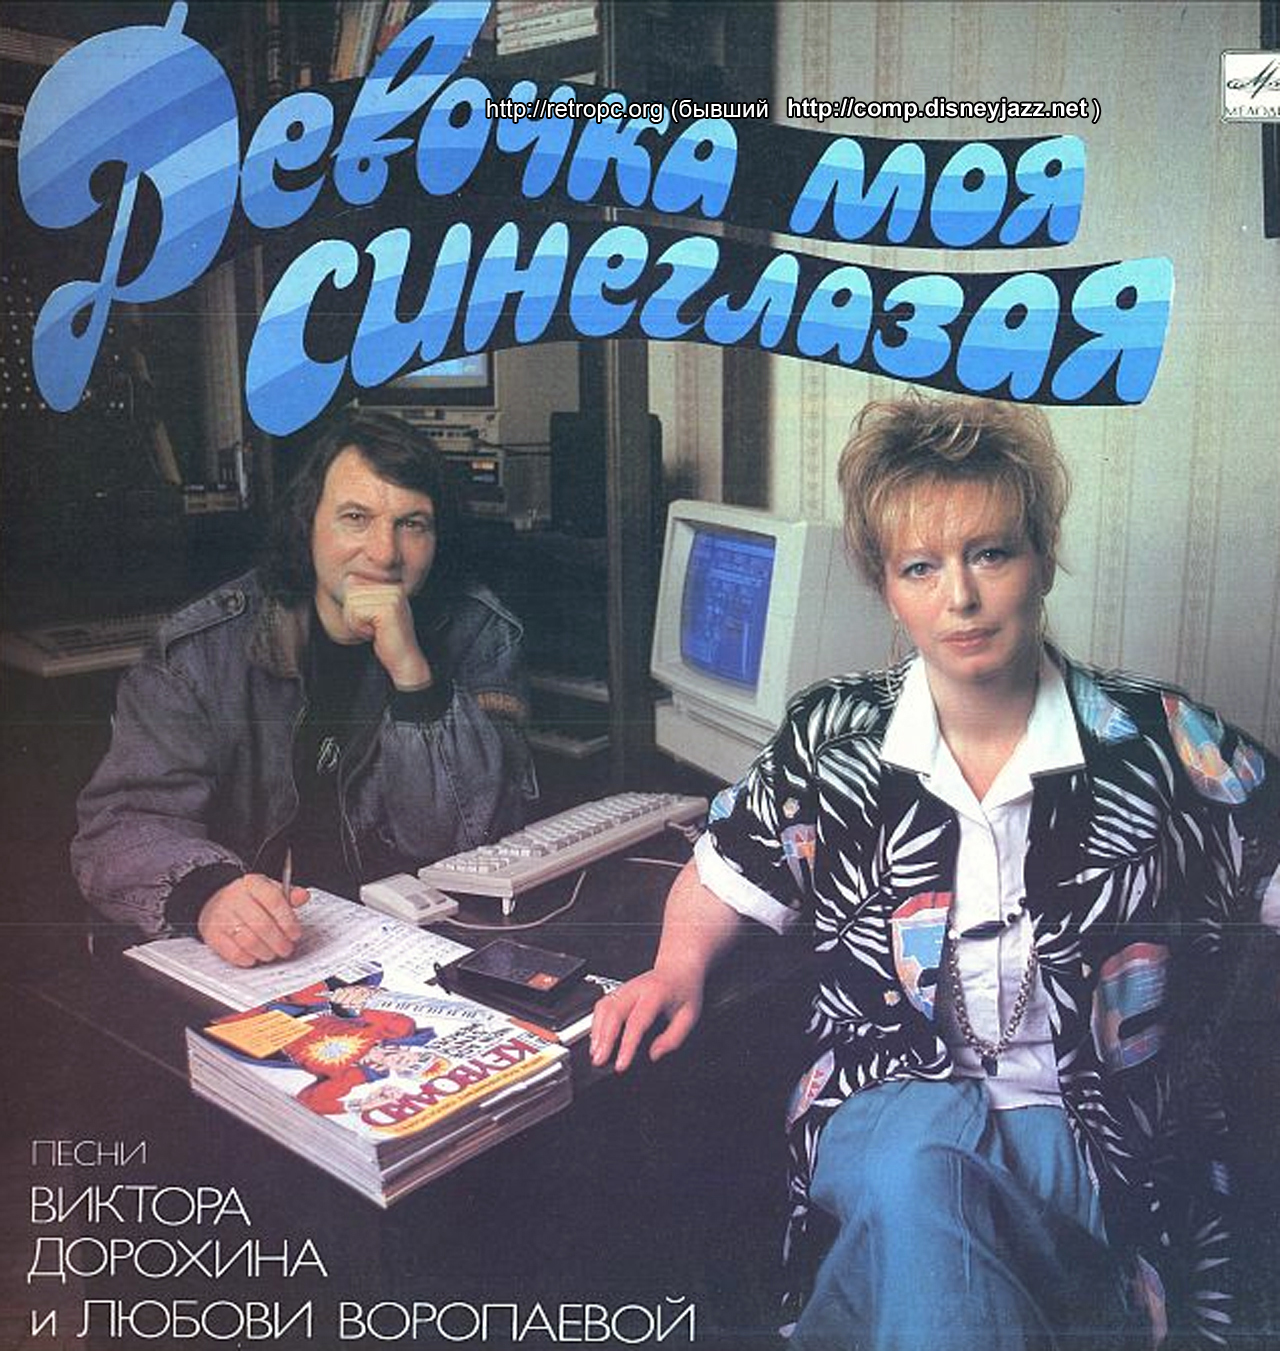 Amiga 1000 в работе у композитора Виктора Дрохина и Любви Воропаевой для Жени Белоусова